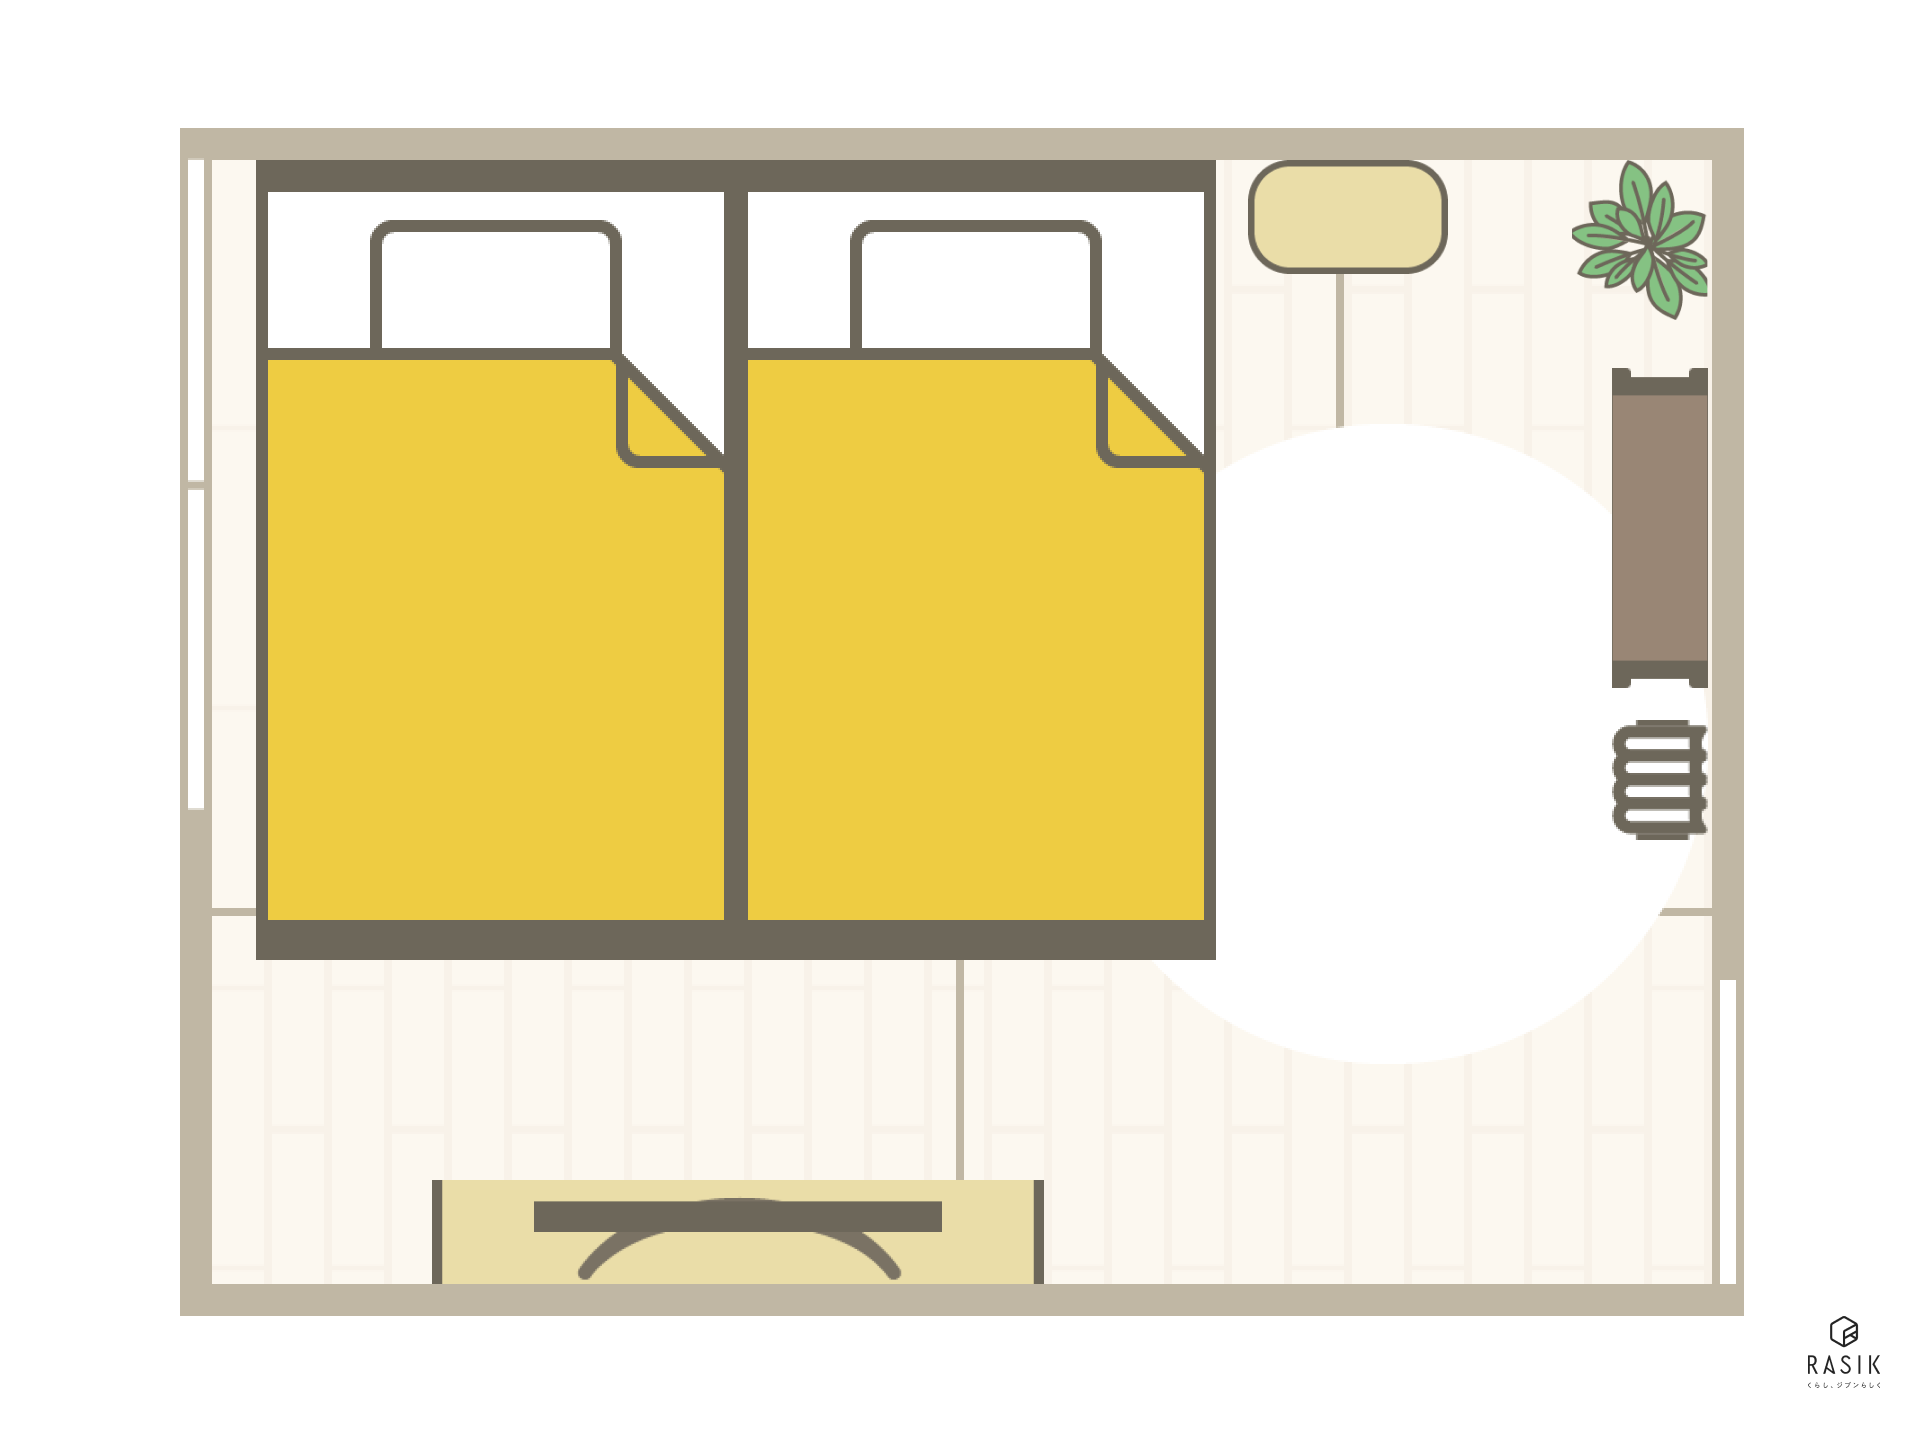 6畳の部屋にセミダブルベッドを2つ並べる画像